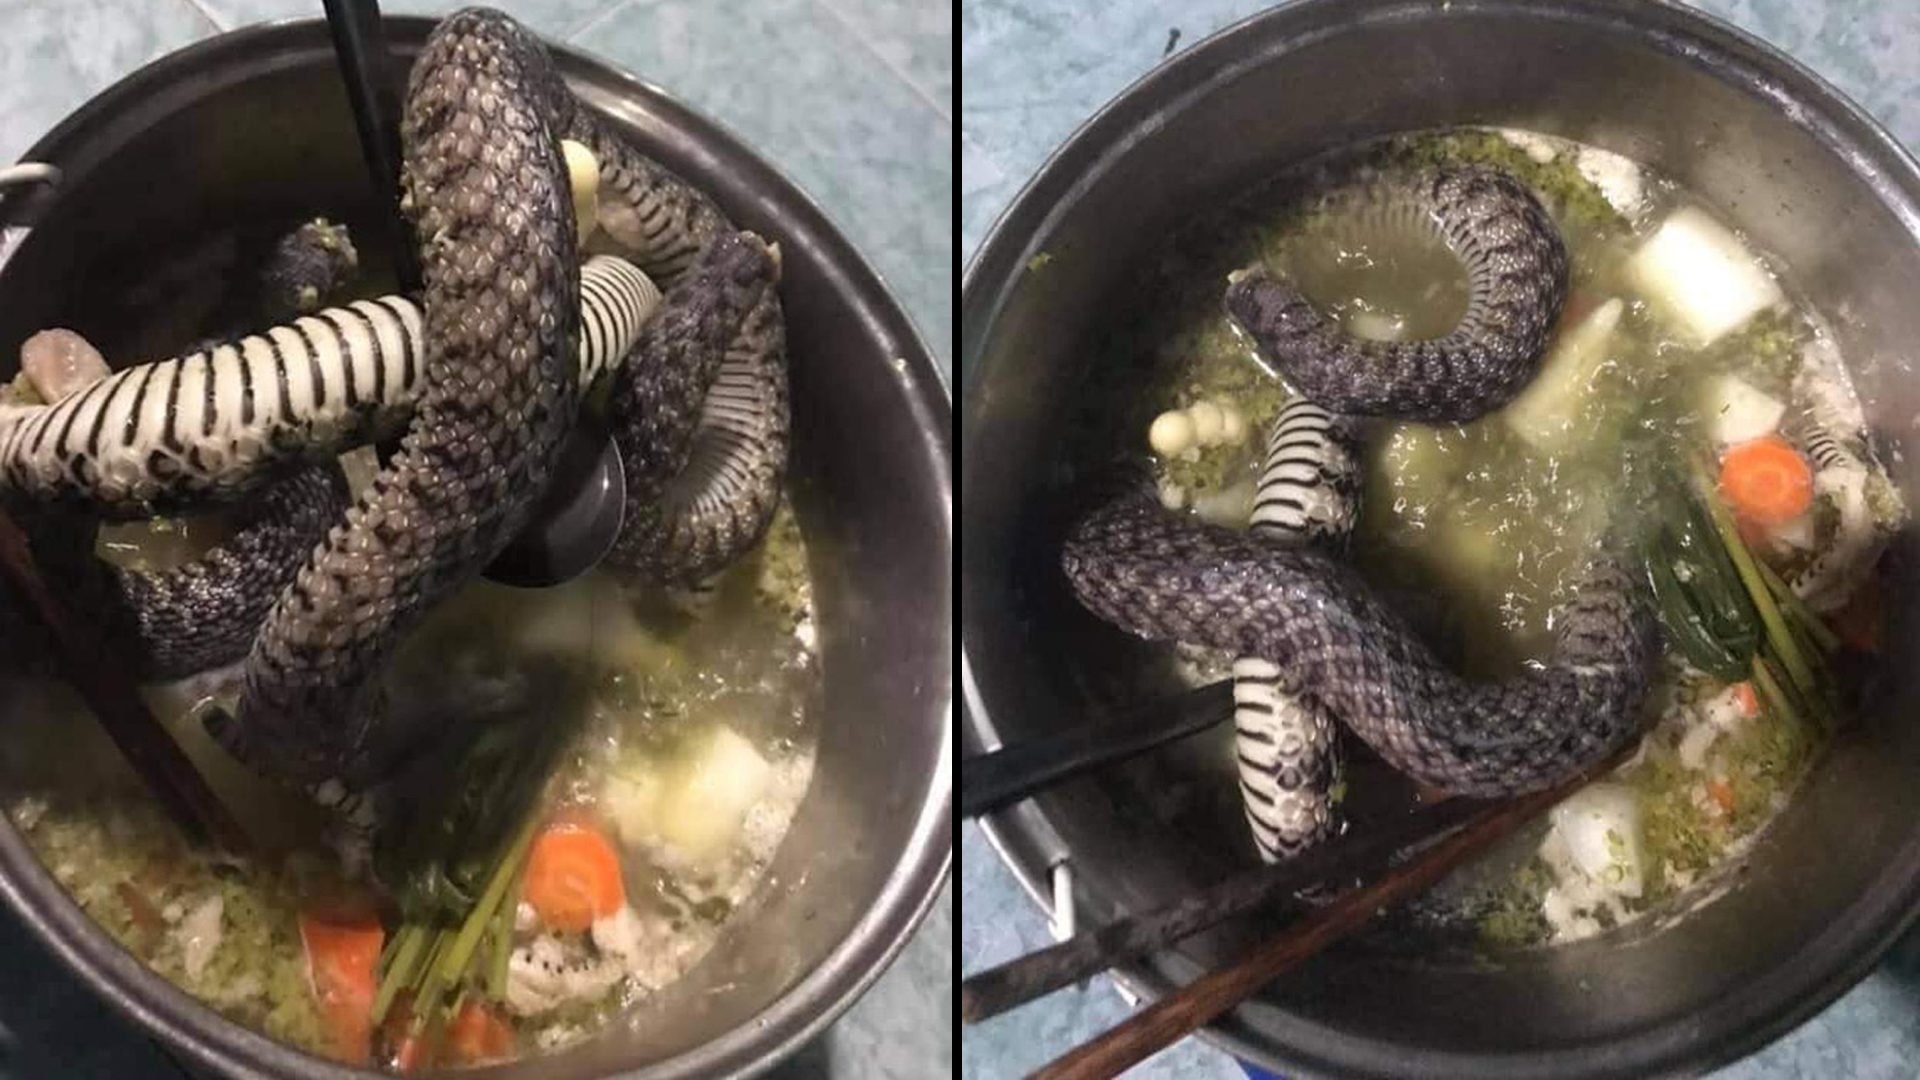 นักศึกษามาเลเซีย จับ "งู" มาต้มกิน แทนมาม่า ประทังความหิวยามสิ้นเดือน